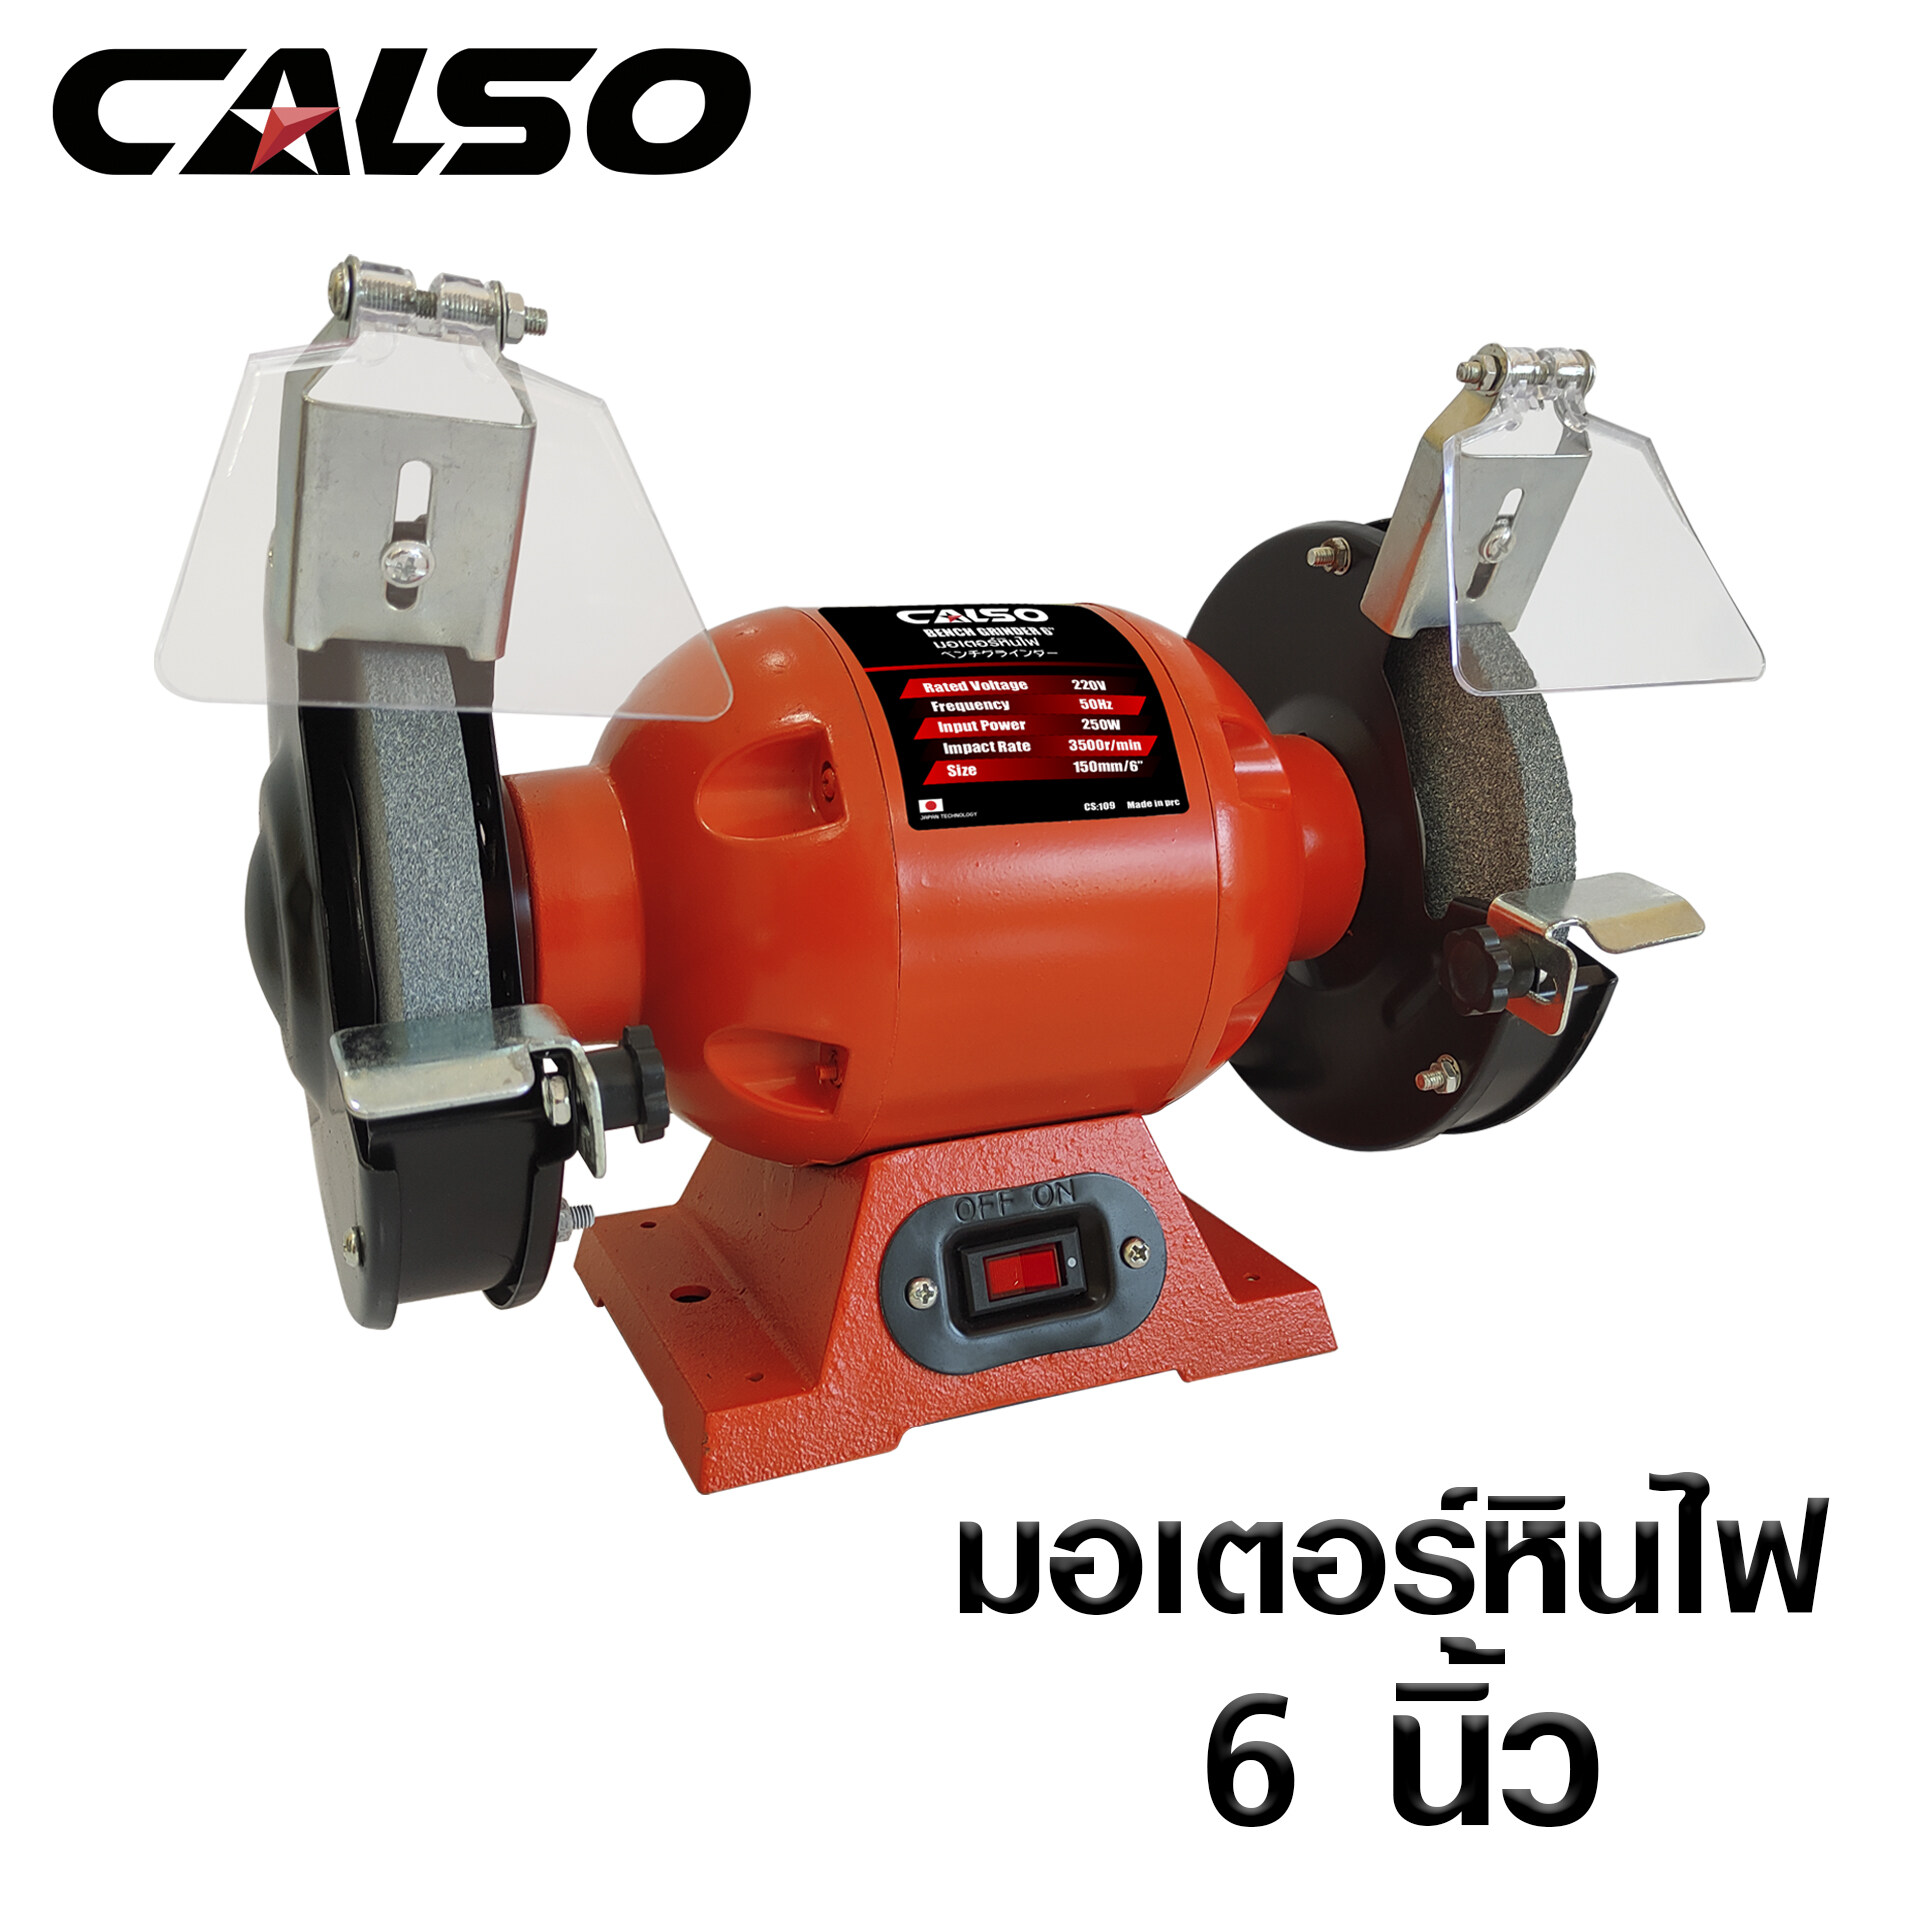 CALSO Grinding wheel motor มอเตอร์หินเจียร 6 นิ้ว มอเตอร์หินไฟสำหรับงานขัดเงา,งานเจียร สามารถปรับความเร็วรอบได้